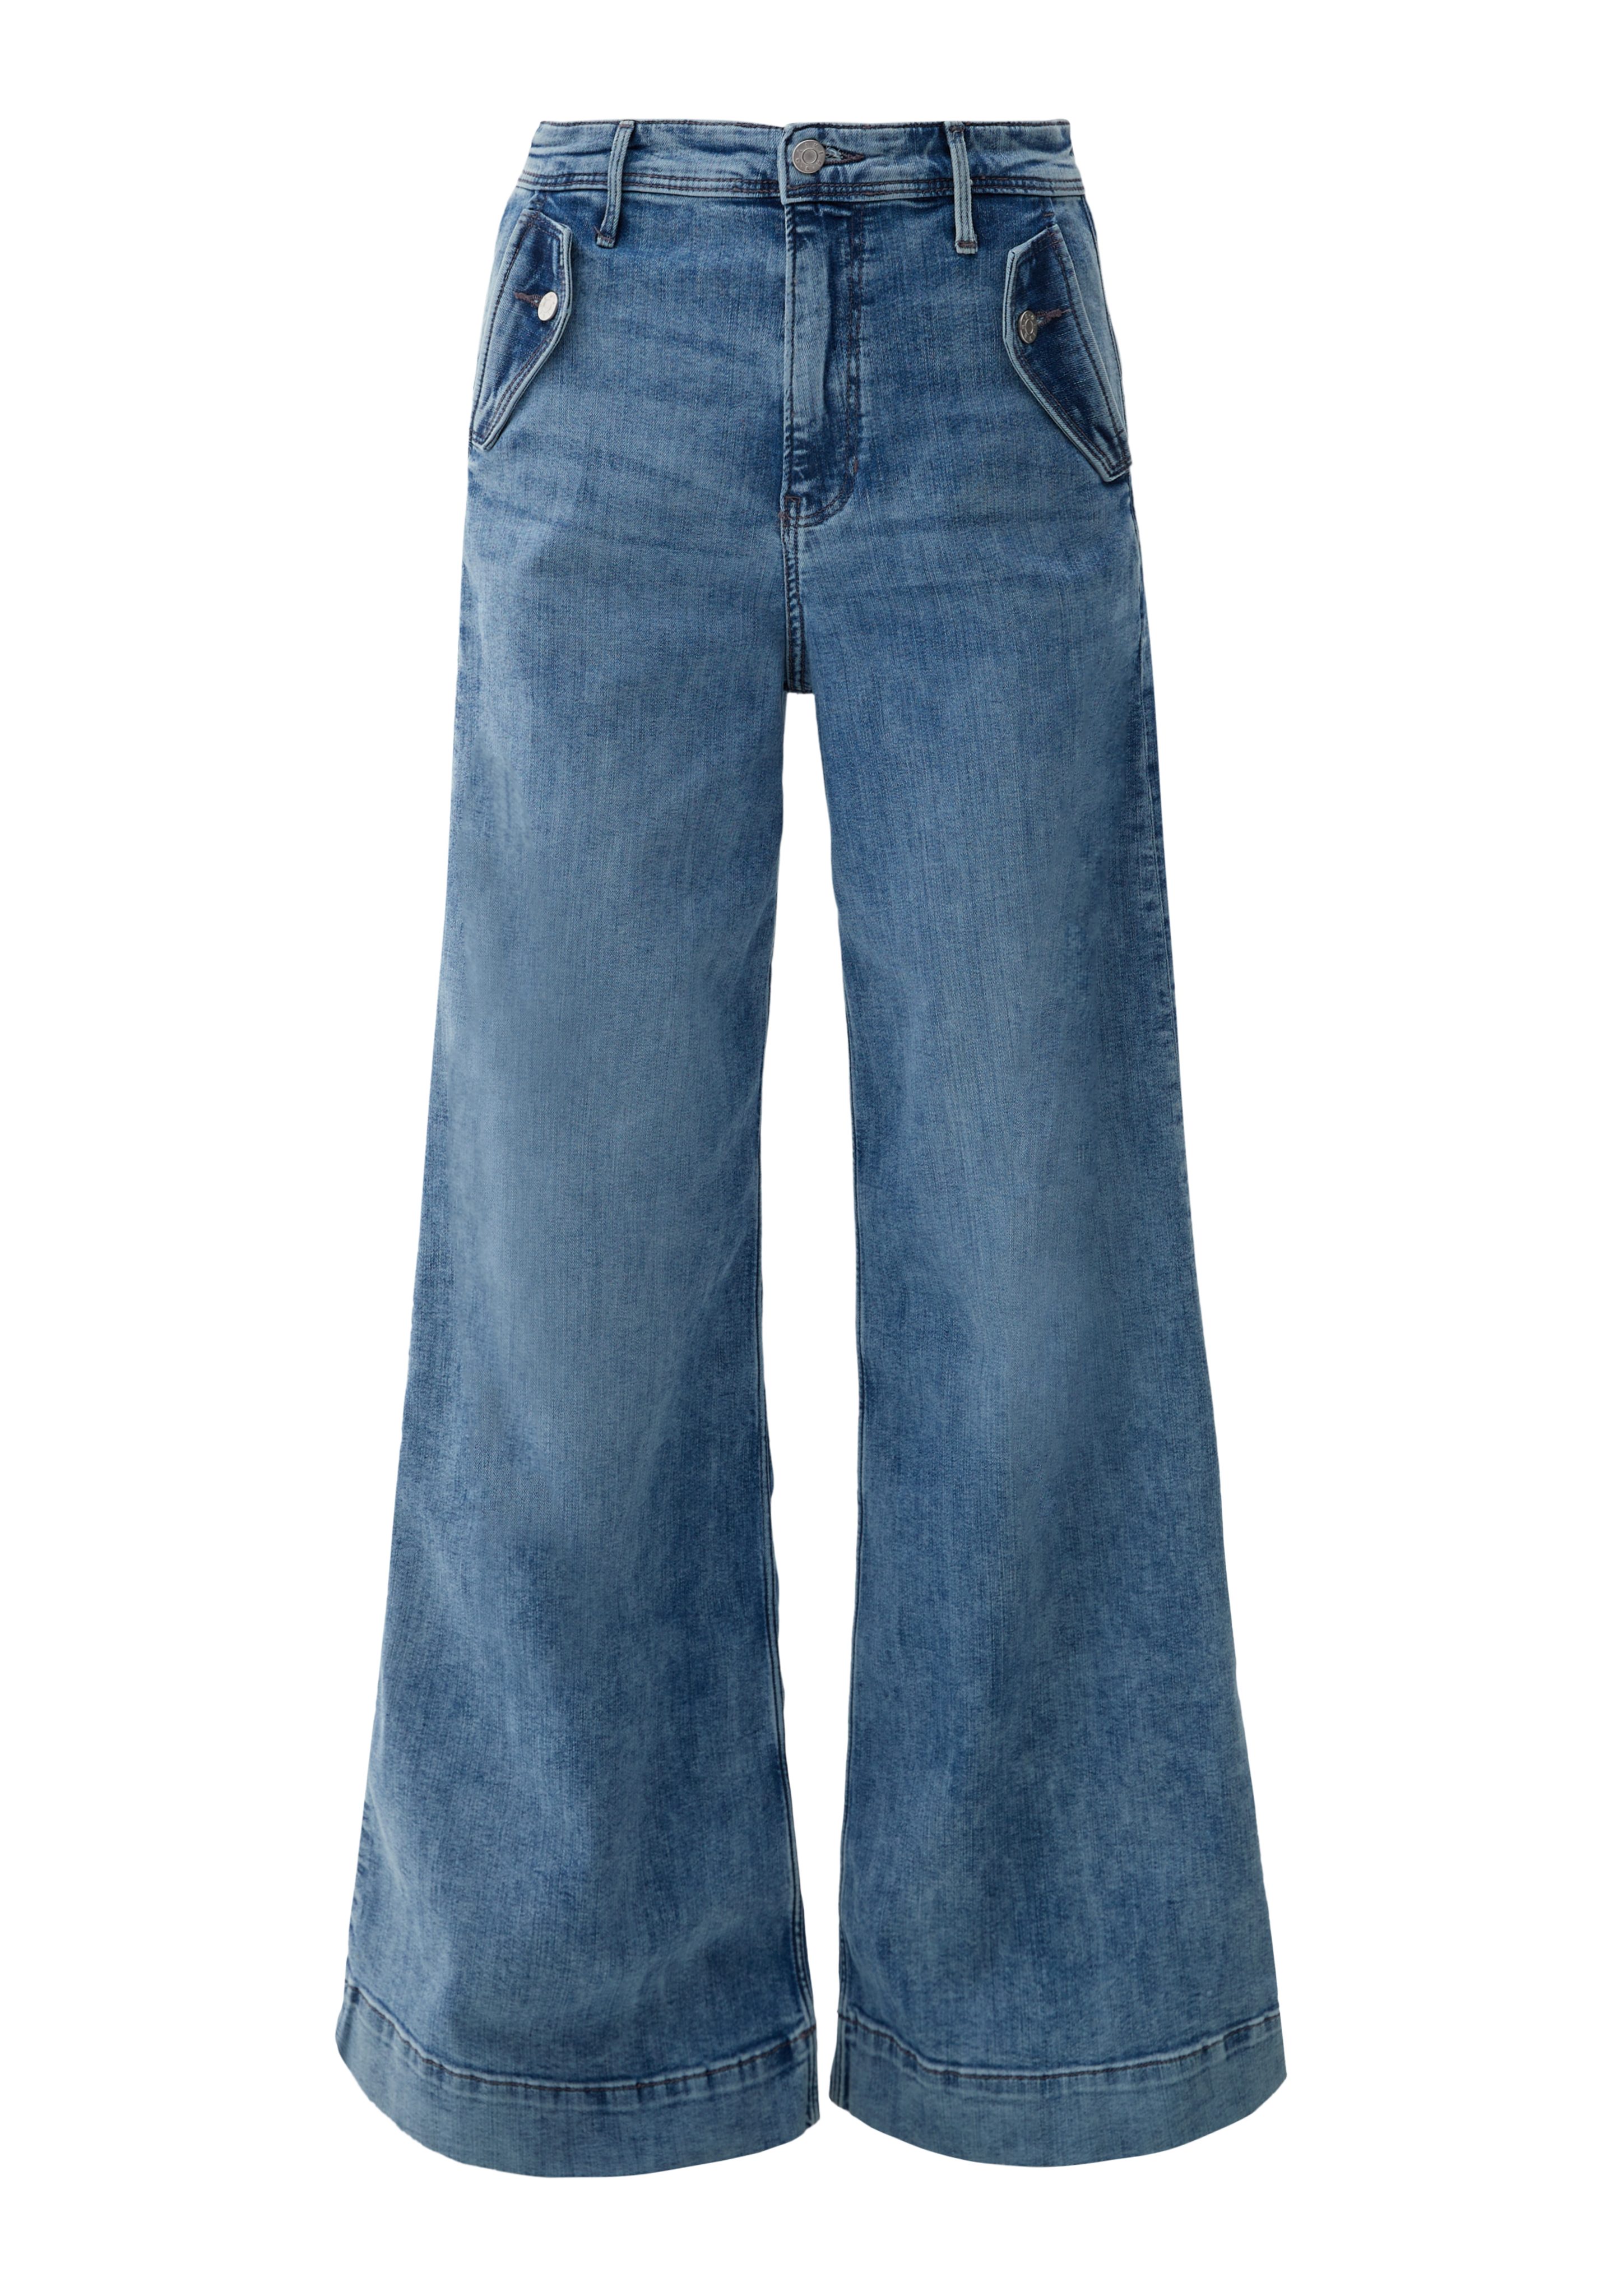 Waschung Leg Fit Wide High Regular / hellblau / s.Oliver Jeans Rise / 5-Pocket-Jeans Suri